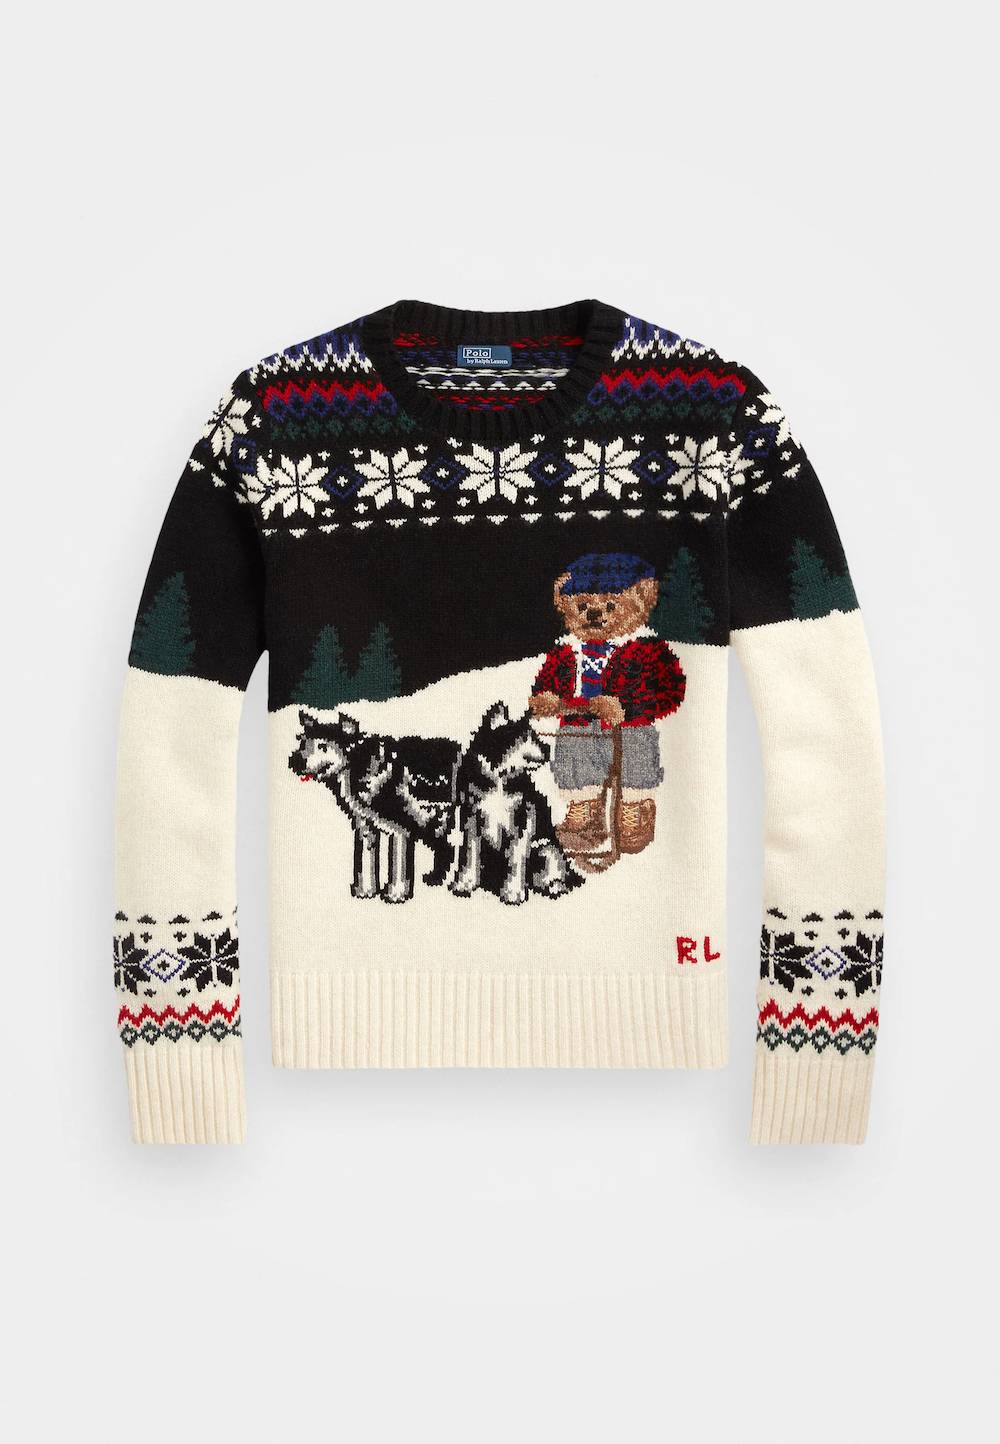 Rodzinny sweter świąteczny Polo Ralph Lauren, 2 899 zł (Fot. materiały prasowe)